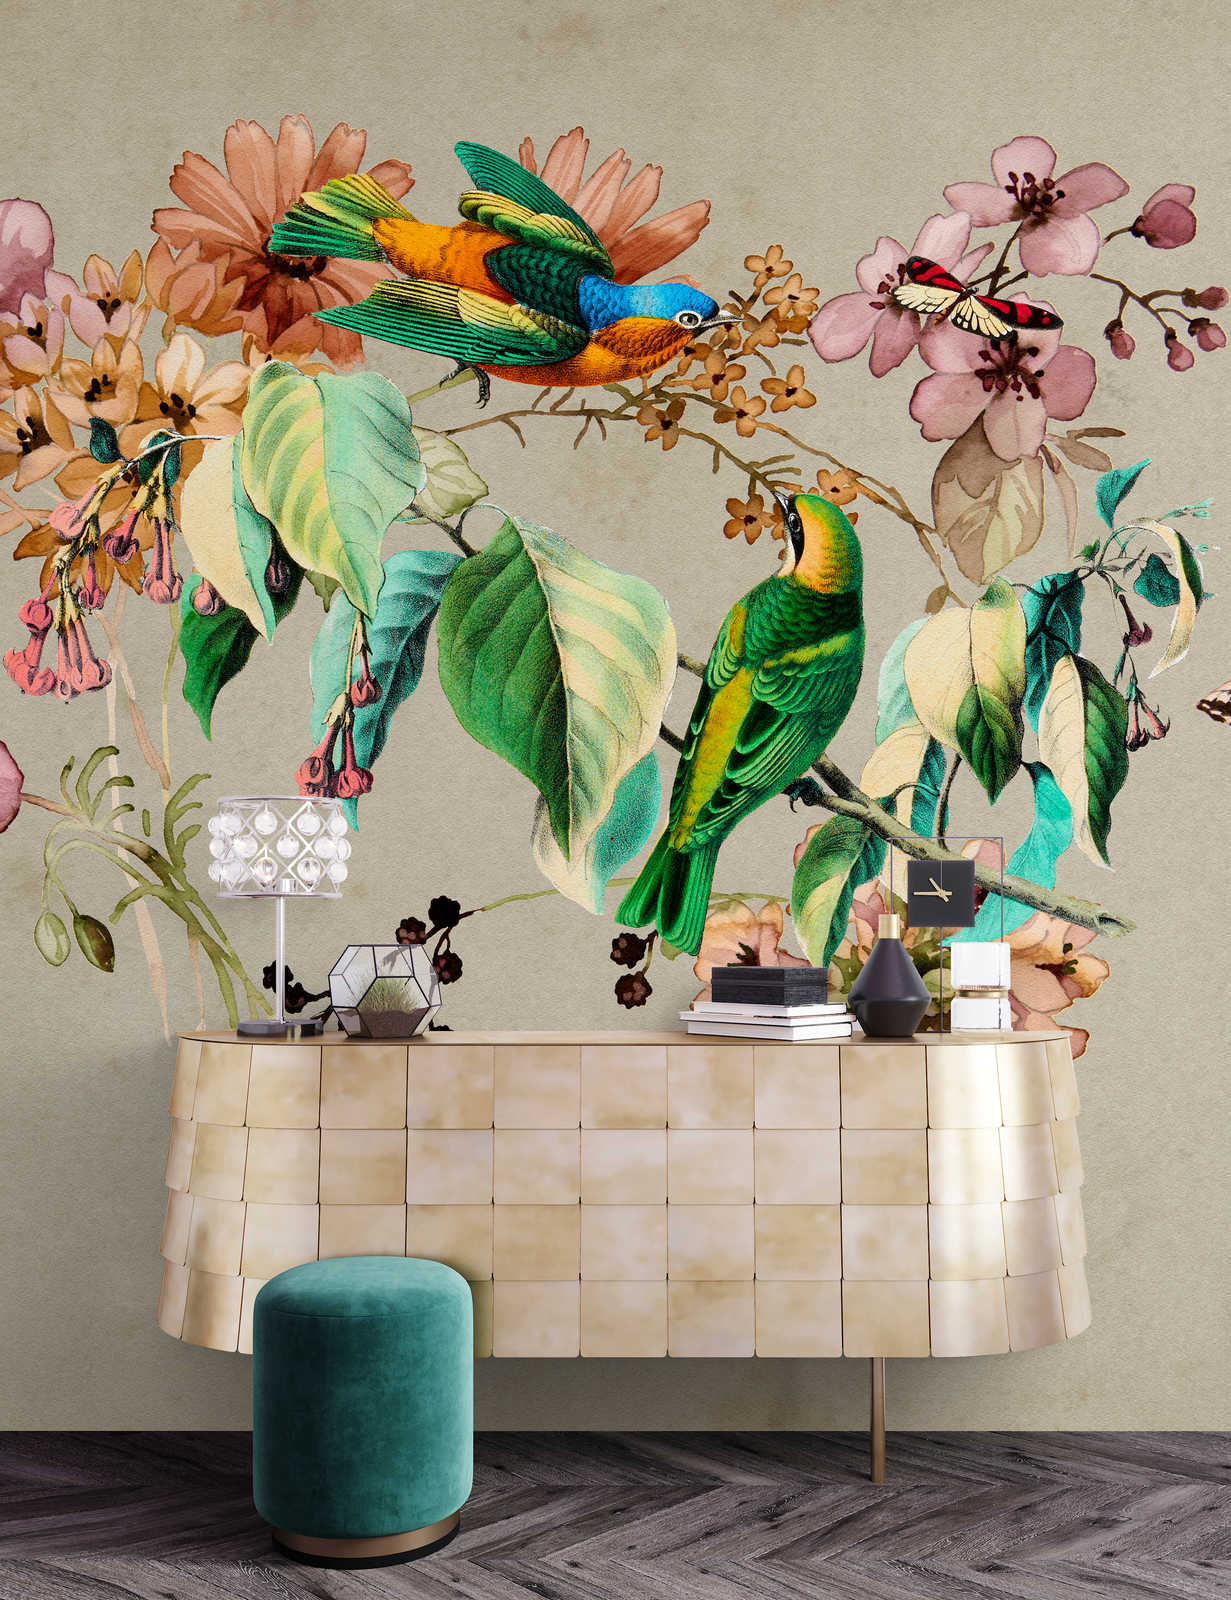             Nido de amor 1 - Mural de pared con flores de acuarela y pájaros de colores
        